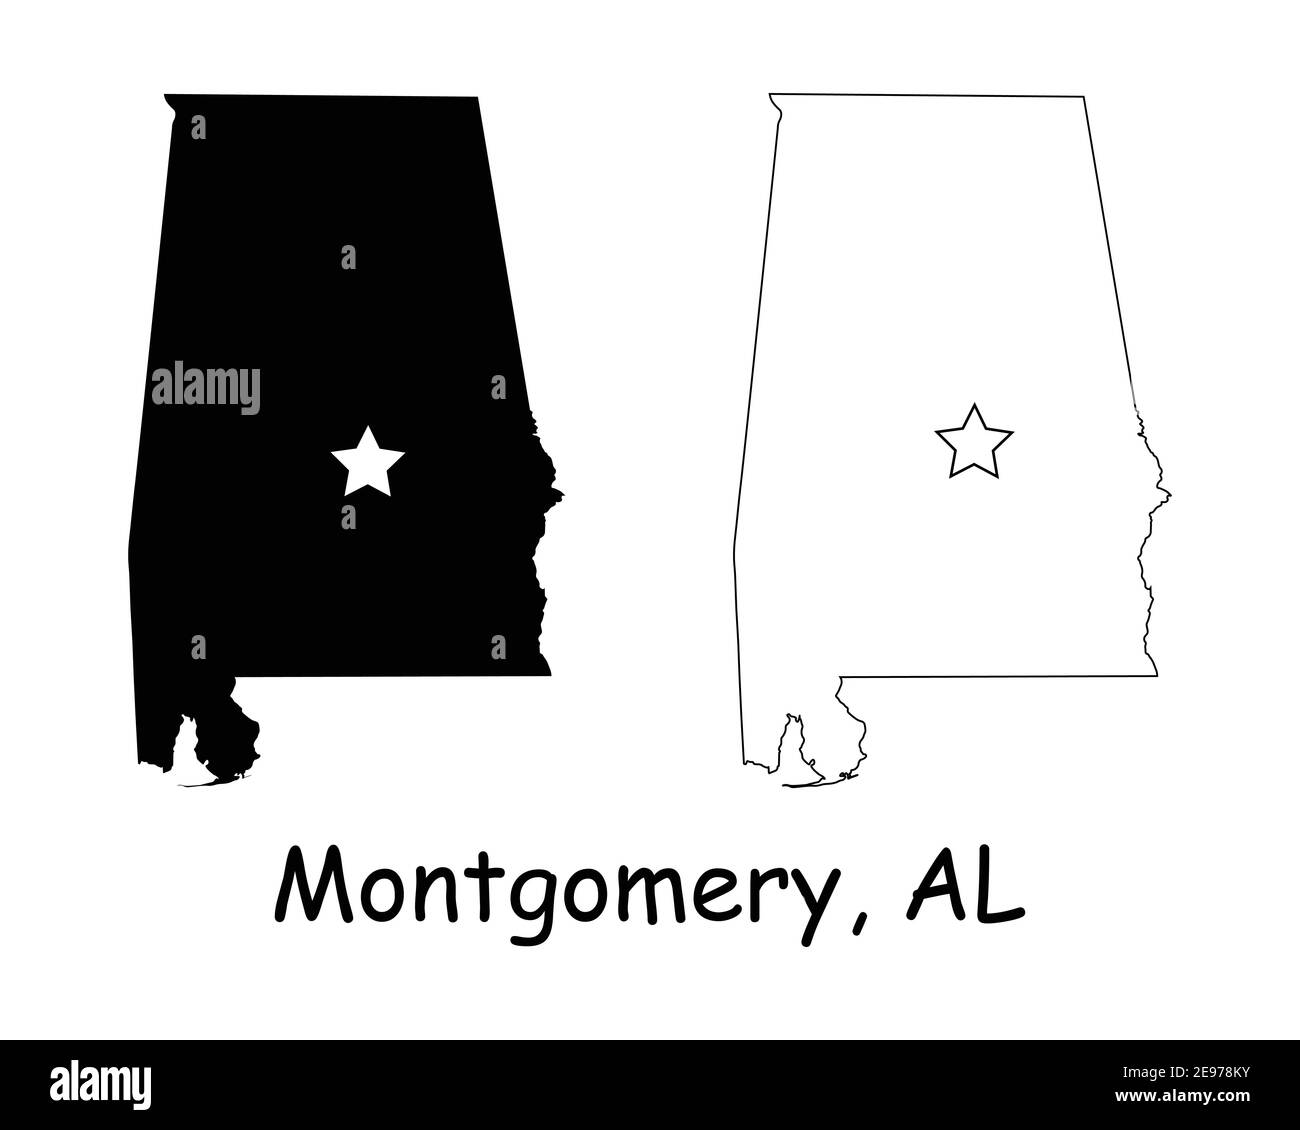 Montgomery Alabama AL State Map USA avec Capital Star. Silhouette noire et cartes isolées sur fond blanc. Vecteur EPS Illustration de Vecteur